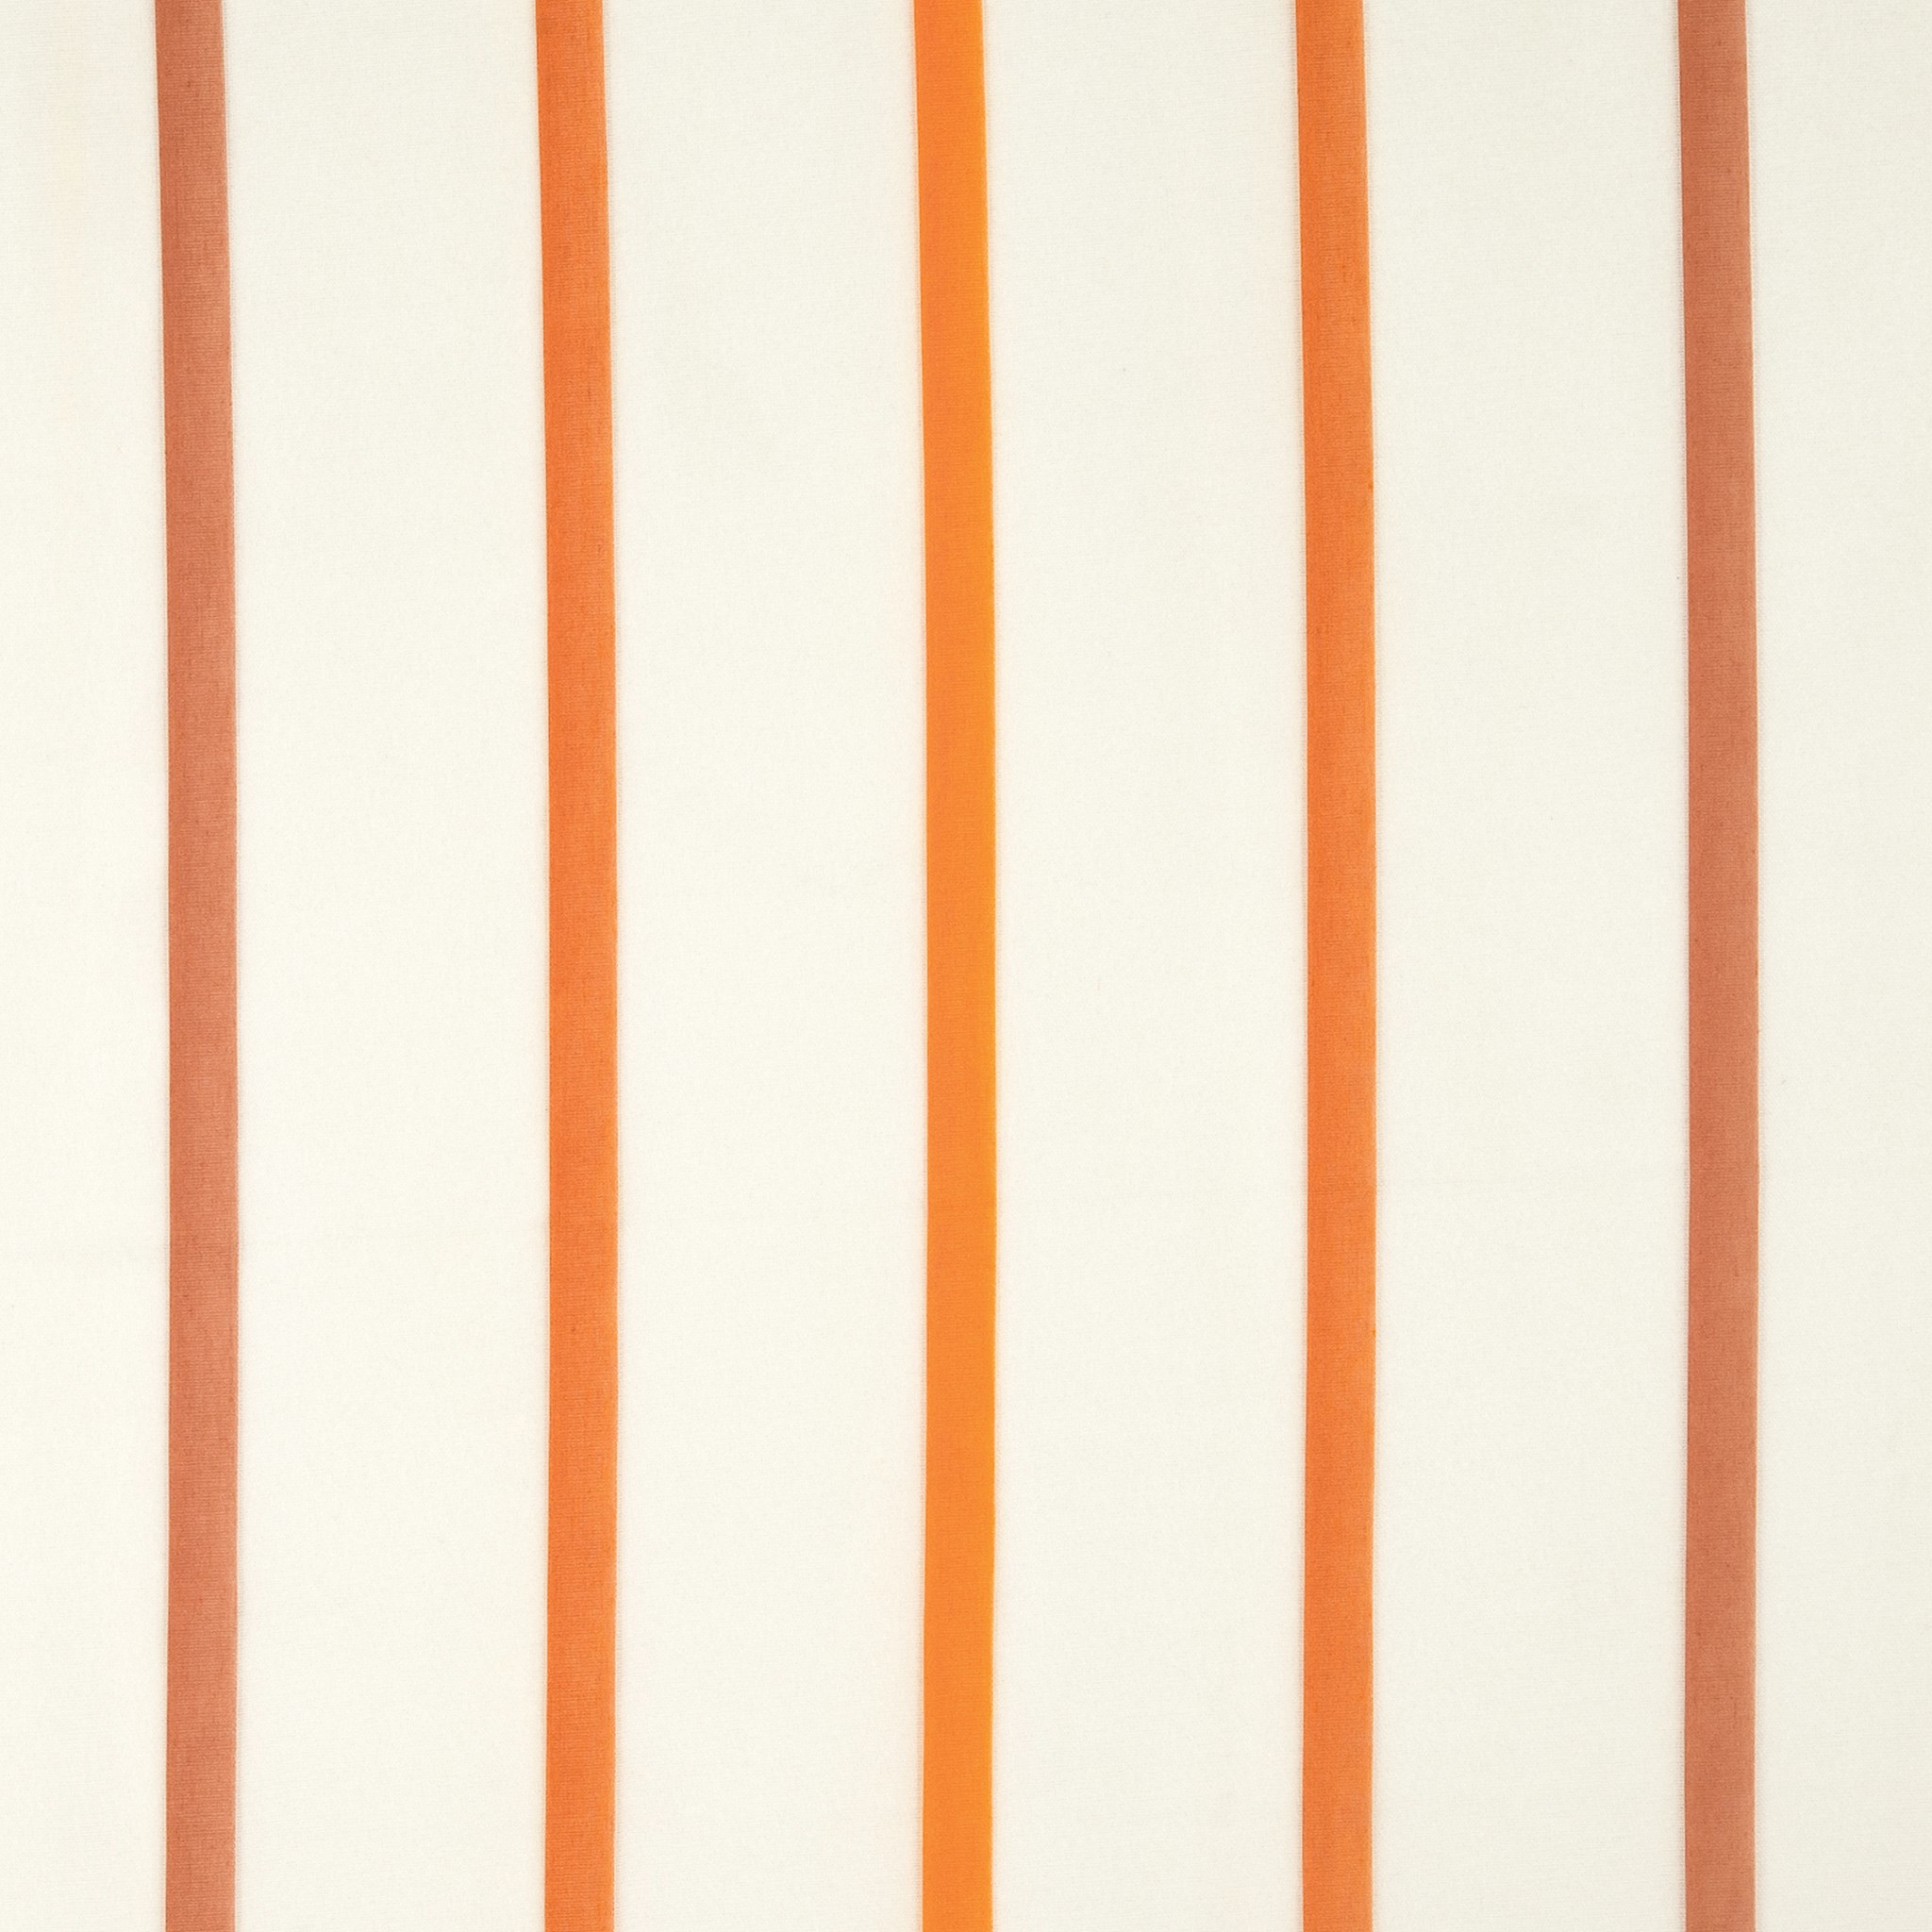 Afbeelding van Gordijnstof Linea orange 300 A 90 x 60 | 523309 kleur 310